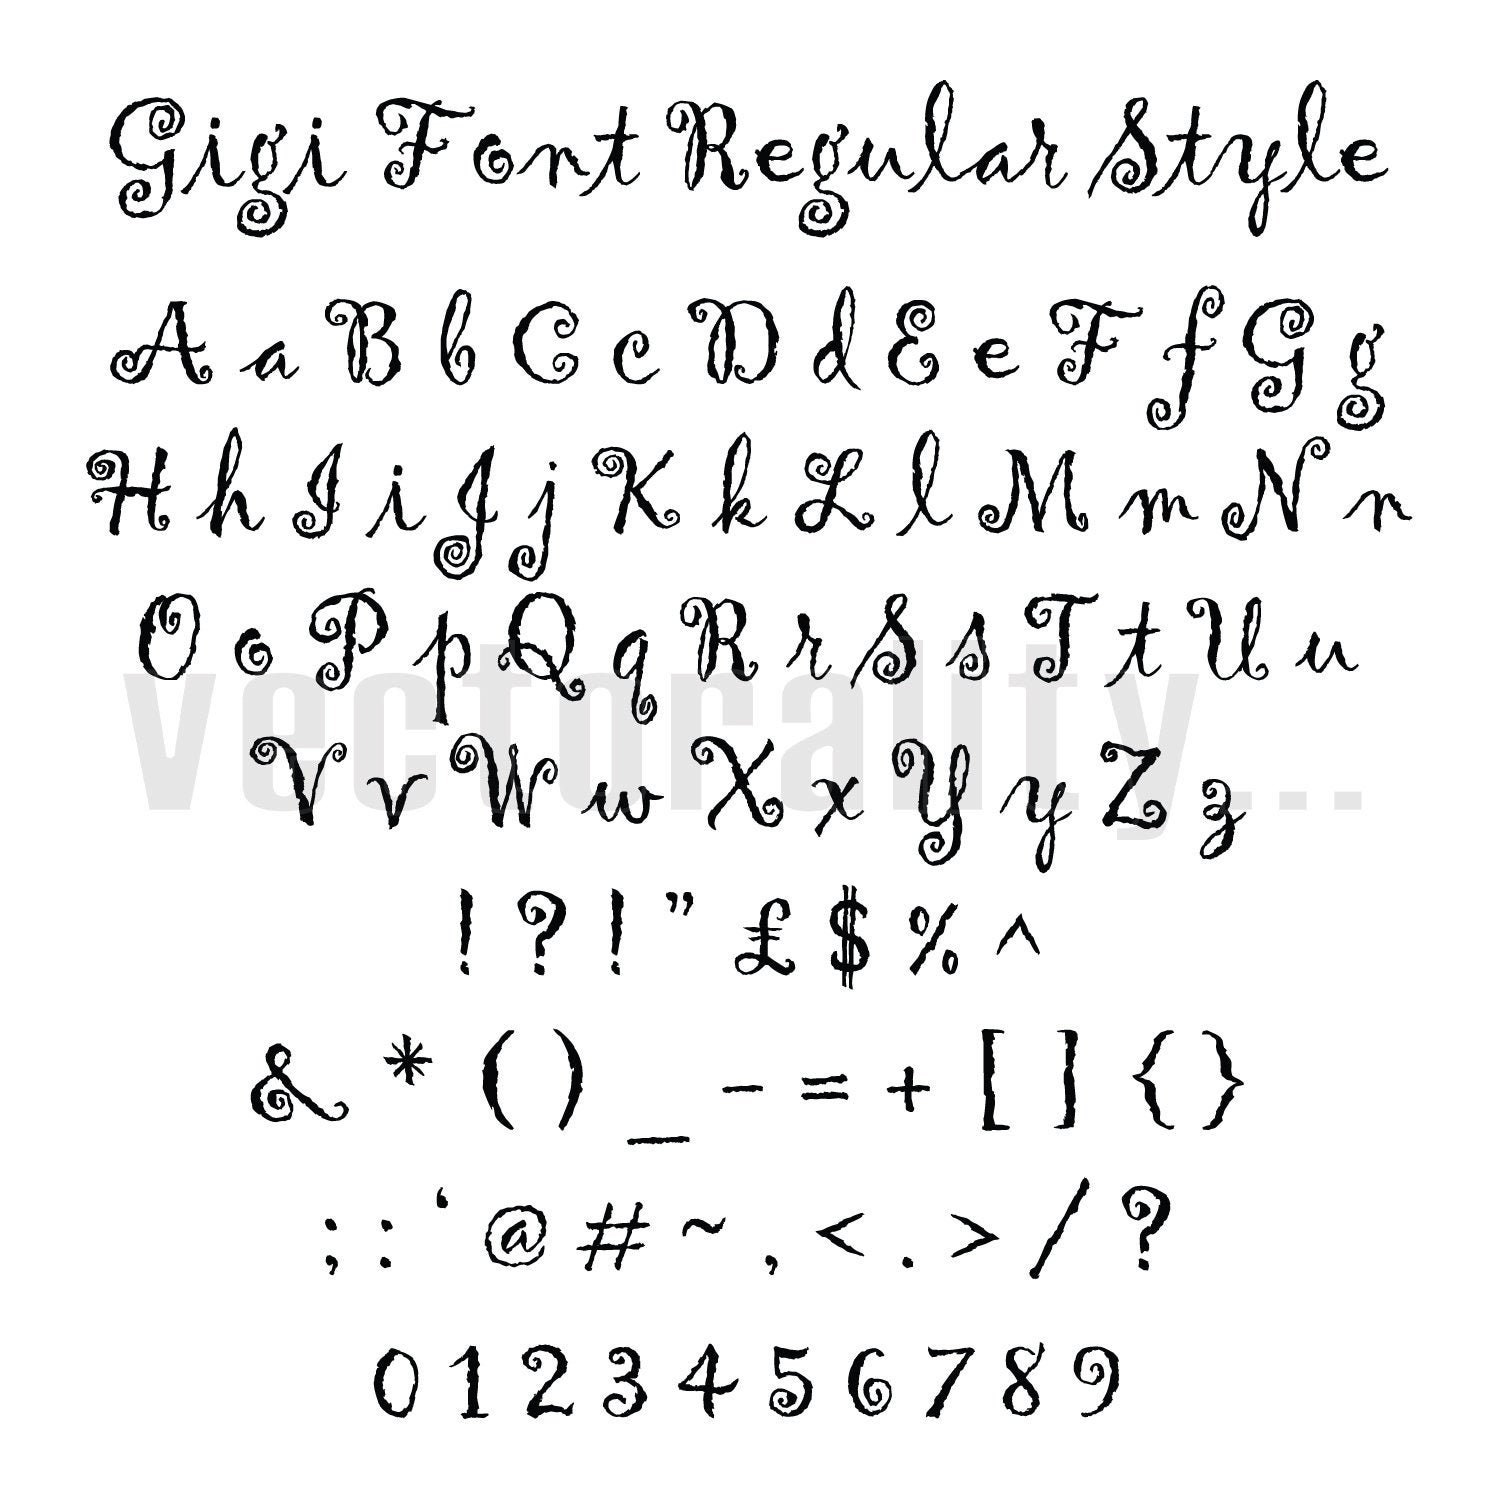 Gigi Font Regular Style Script Alphabet Letters Vector Art Etsy